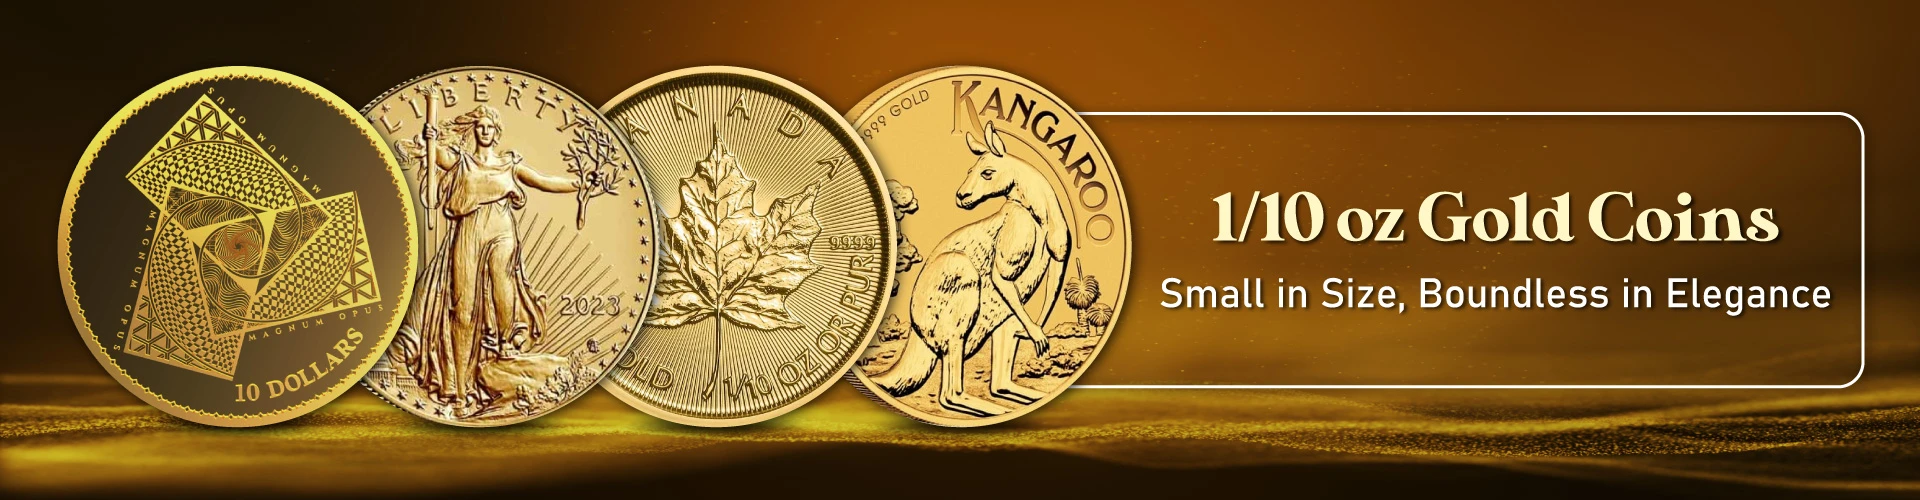 1/10 oz Gold Coin Online | BOLD Precious Metals